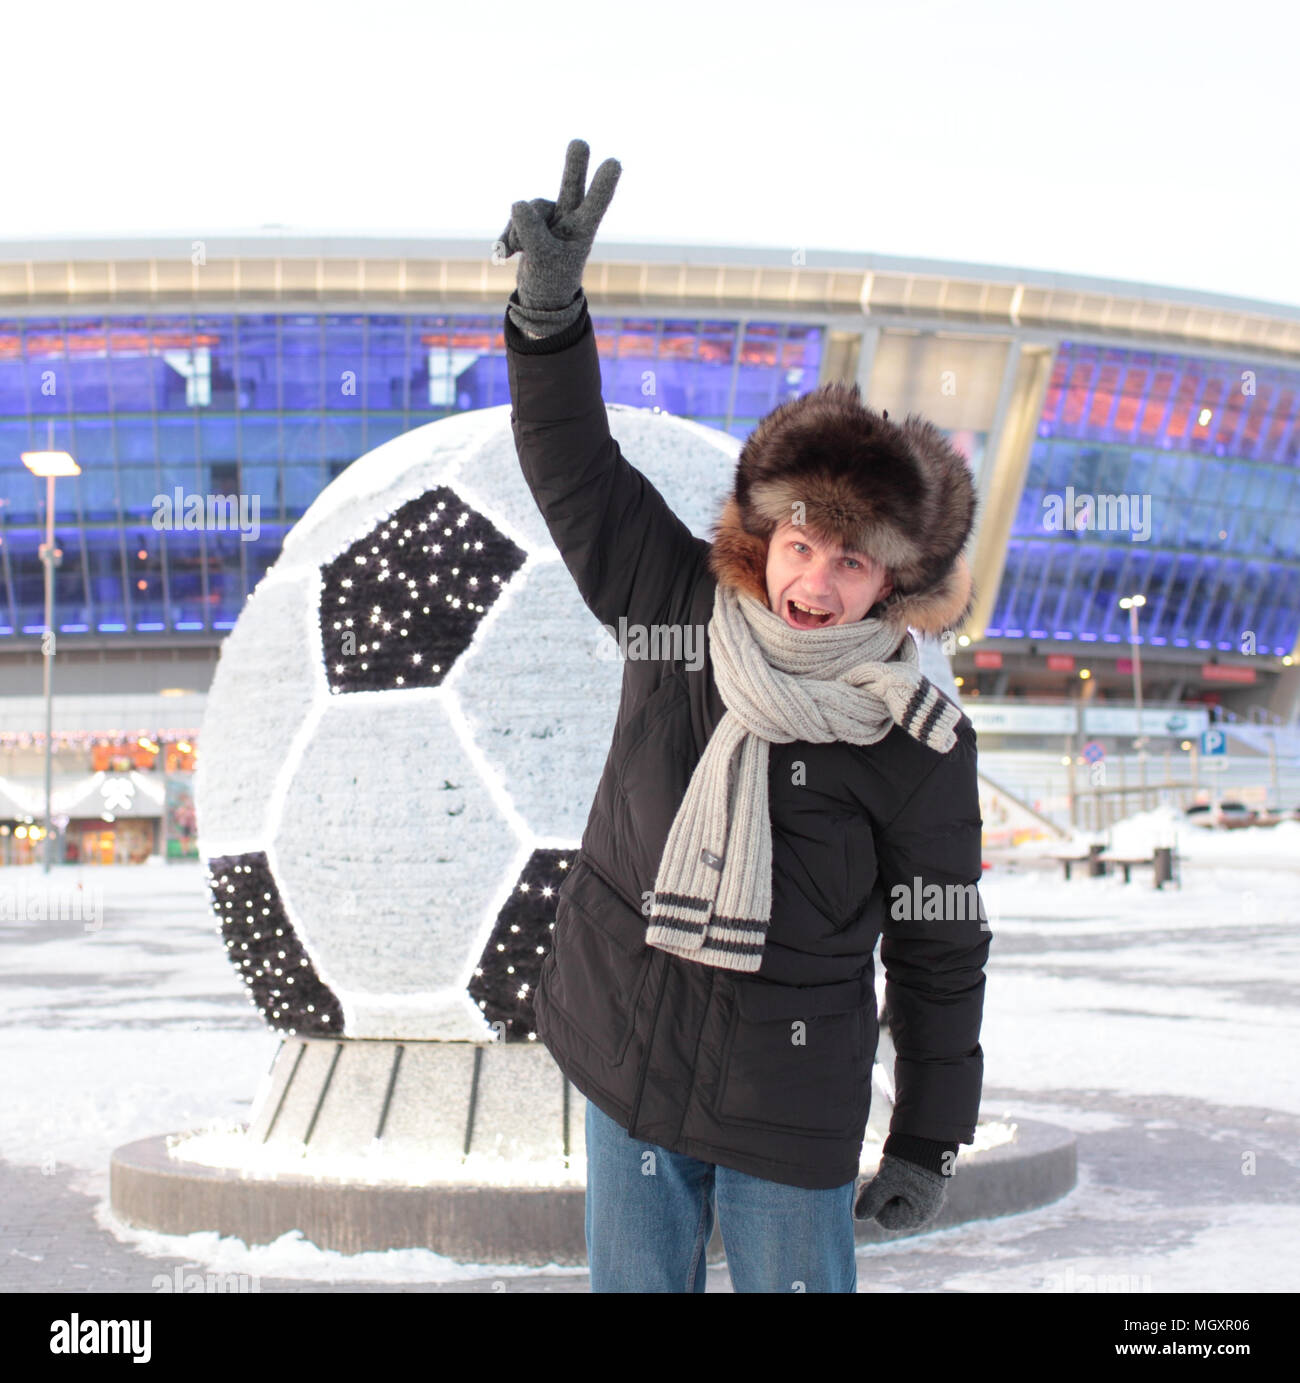 Fußball-Fan im Winter Kleidung gegen Stadion Stockfotografie - Alamy